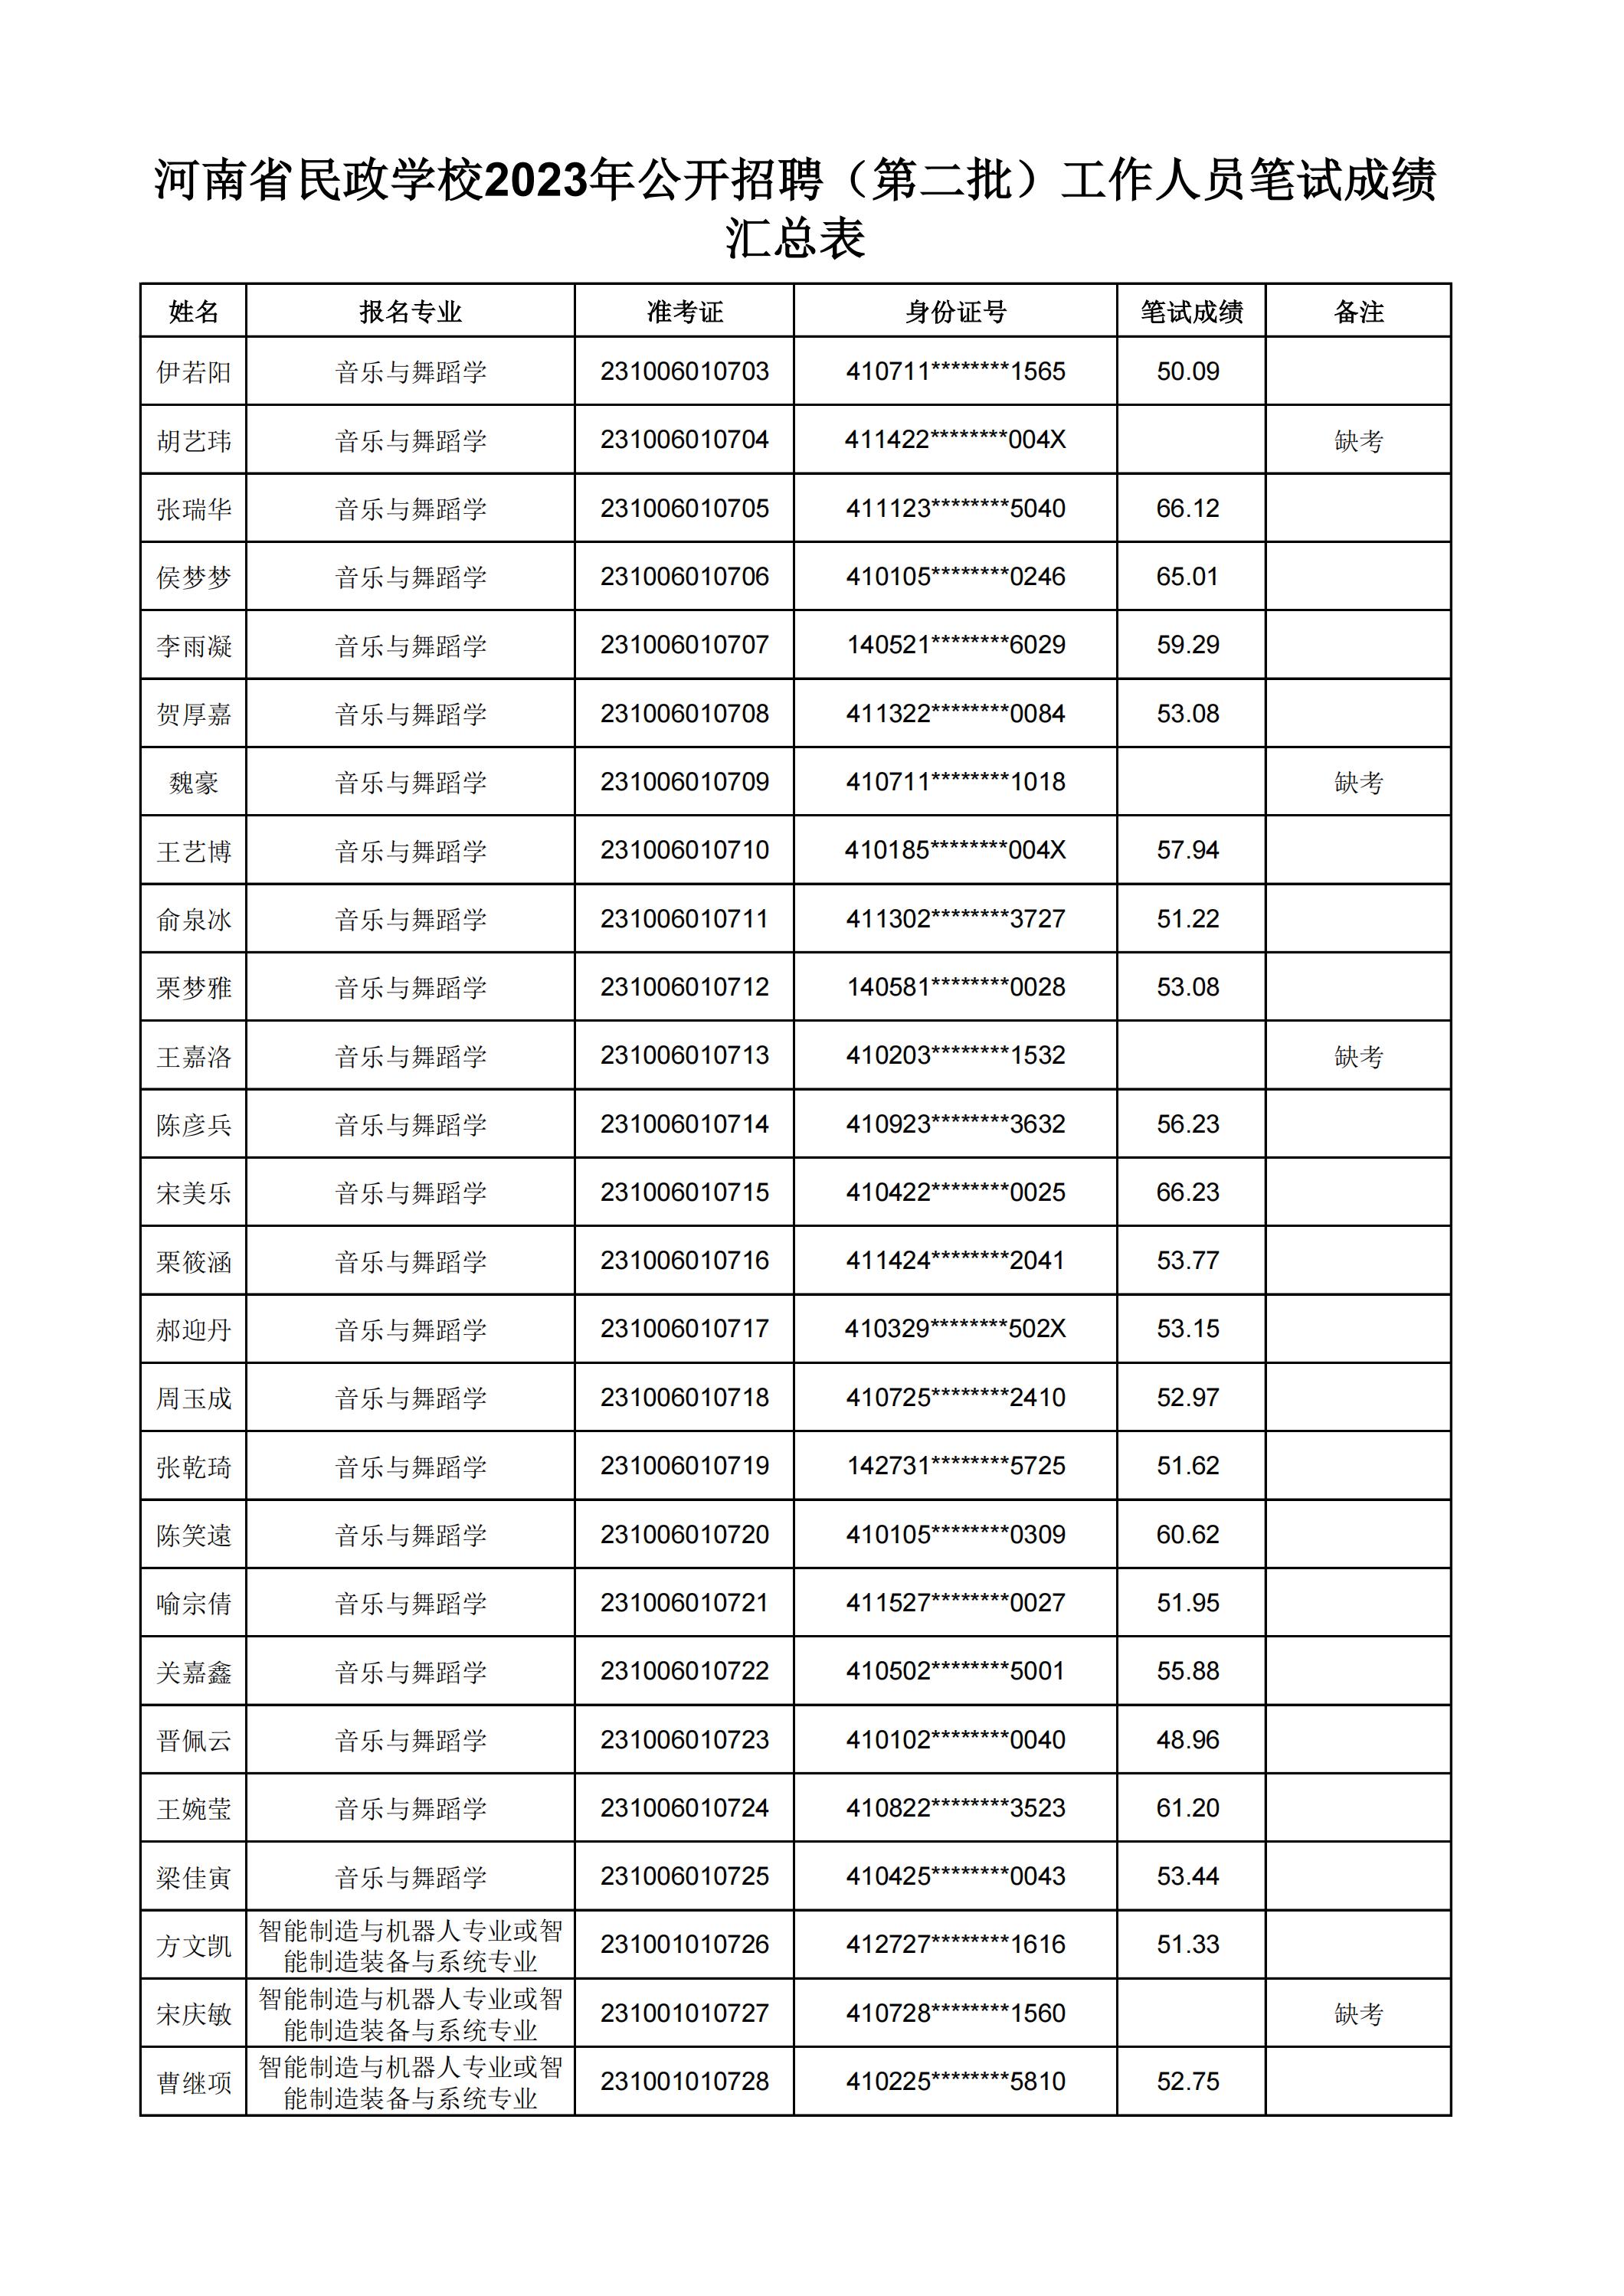 河南省民政学校2023年公开招聘（第二批）工作人员笔试成绩汇总表(2)_07.jpg